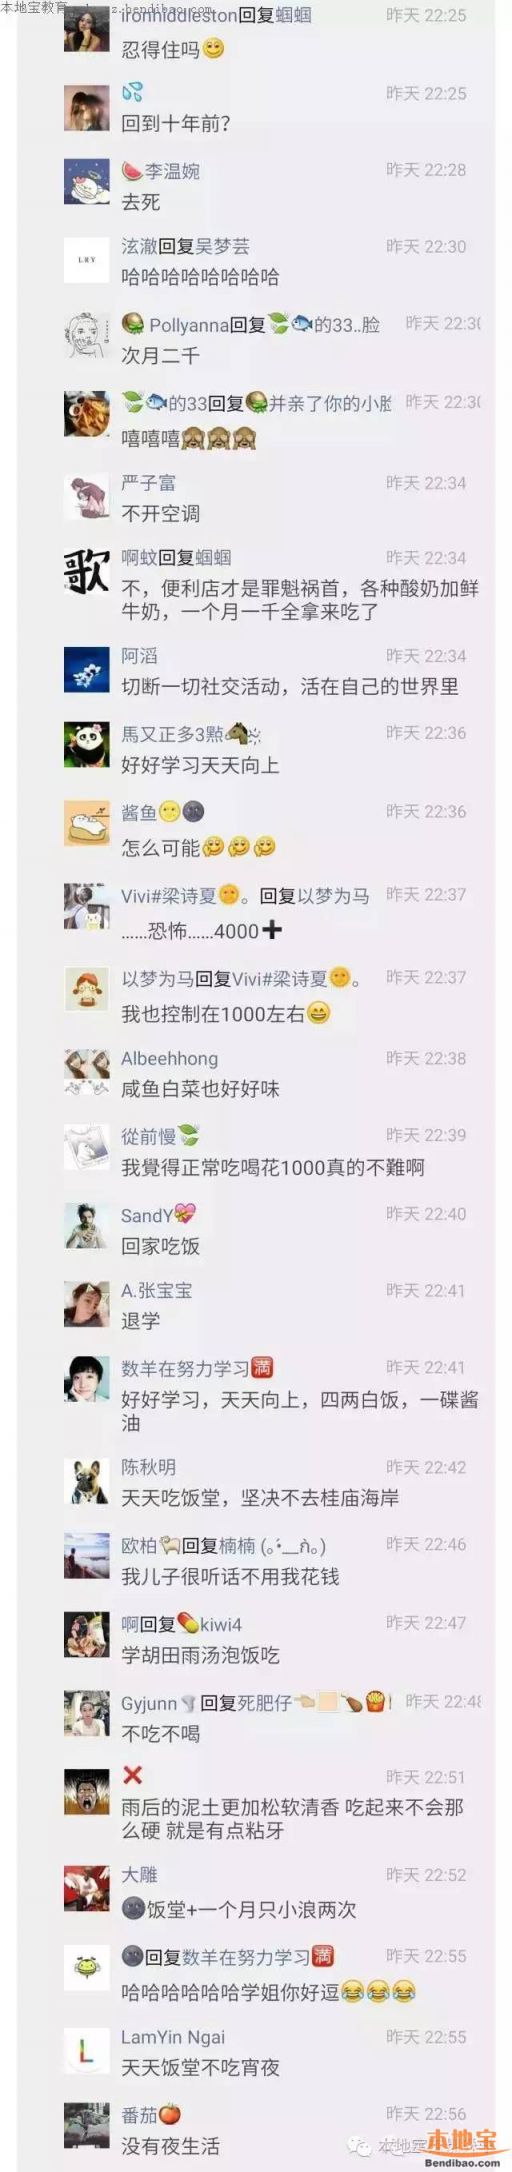 在深圳大学就读，一个月1000块钱生活费能活下去吗？